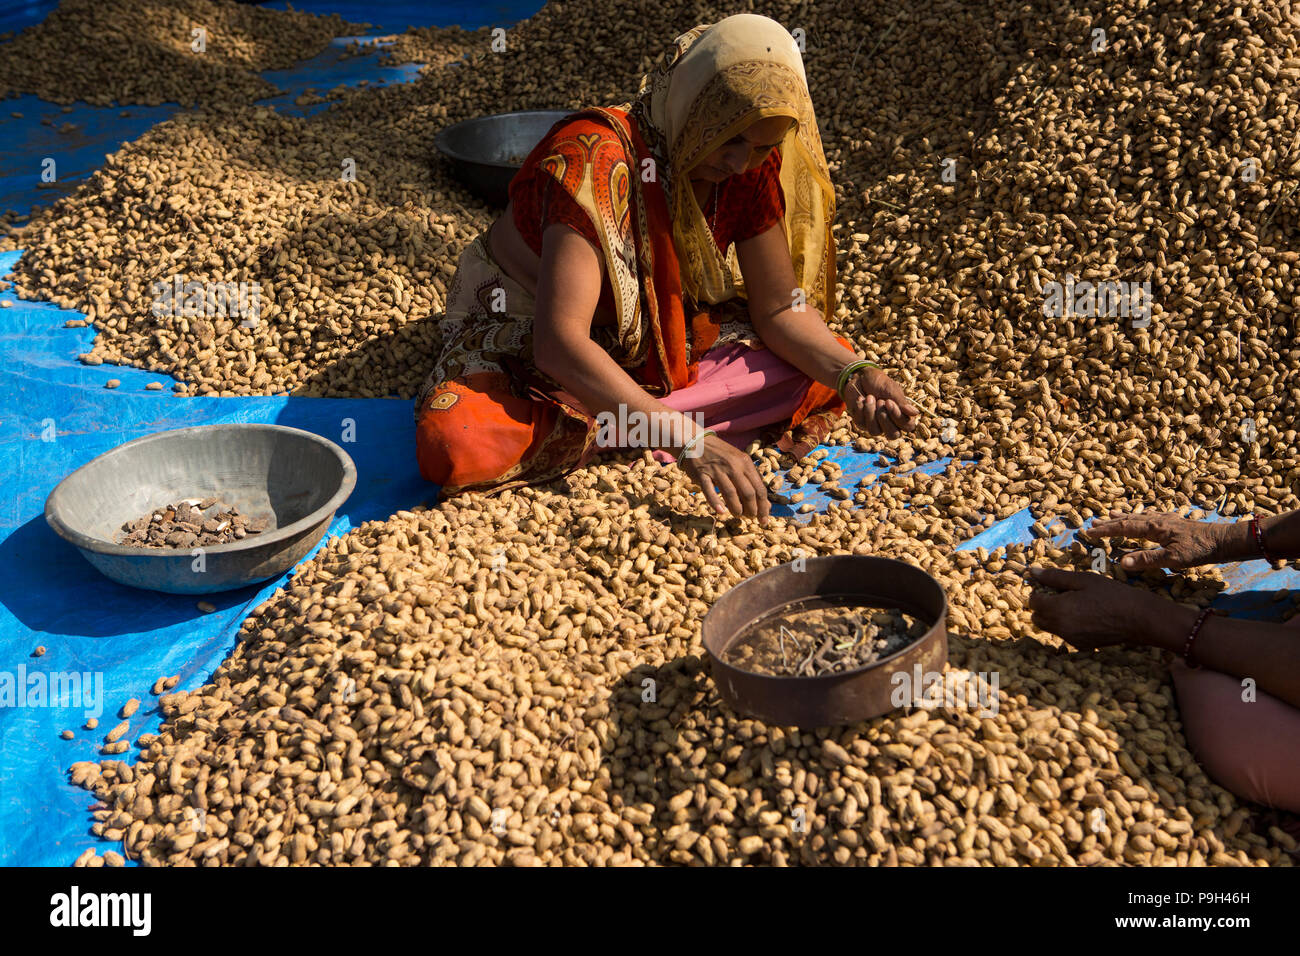 Frauen sortieren durch einen Haufen Erdnüsse auf einem Bauernhof, Ahmedabad, Indien. Stockfoto